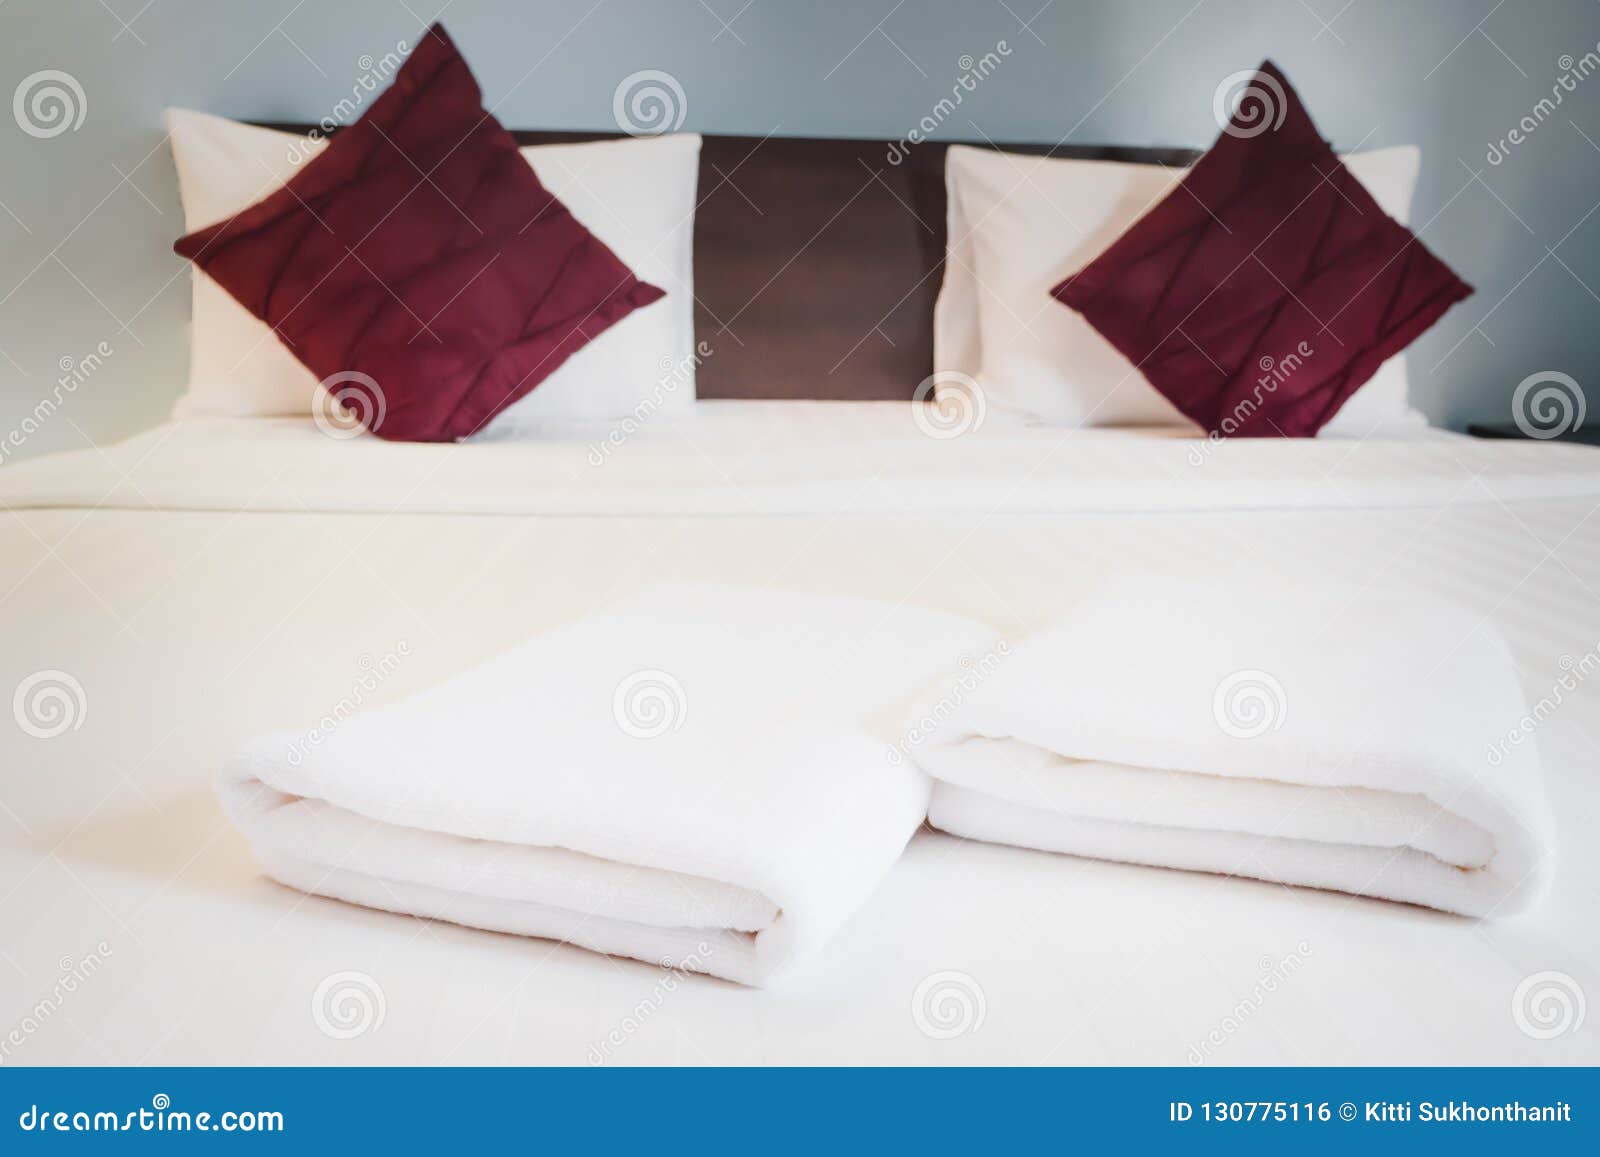 Полотенце на кровати. Сложенные полотенца на кровати. Сложить полотенце в отеле. Красиво сложенные полотенца в гостинице. Красиво сложить полотенце на кровать.